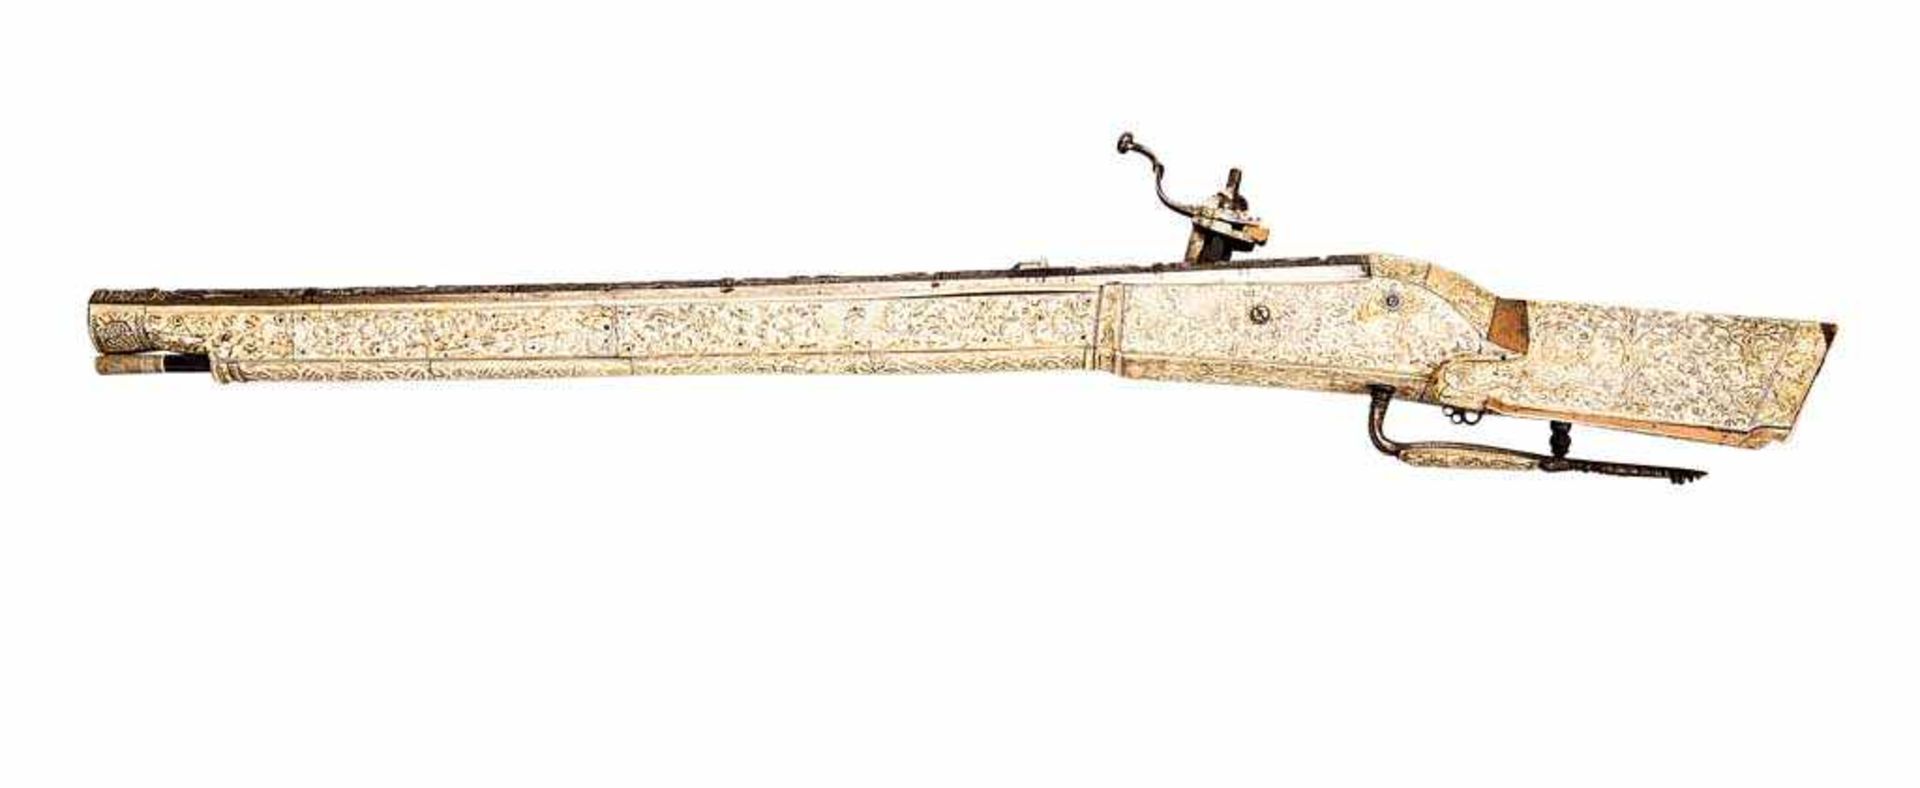 Radschlossbüchse. Schwerer Eisenlauf mit Zügen im Kal. 17 mm, auf der Oberseite in reliefiertem